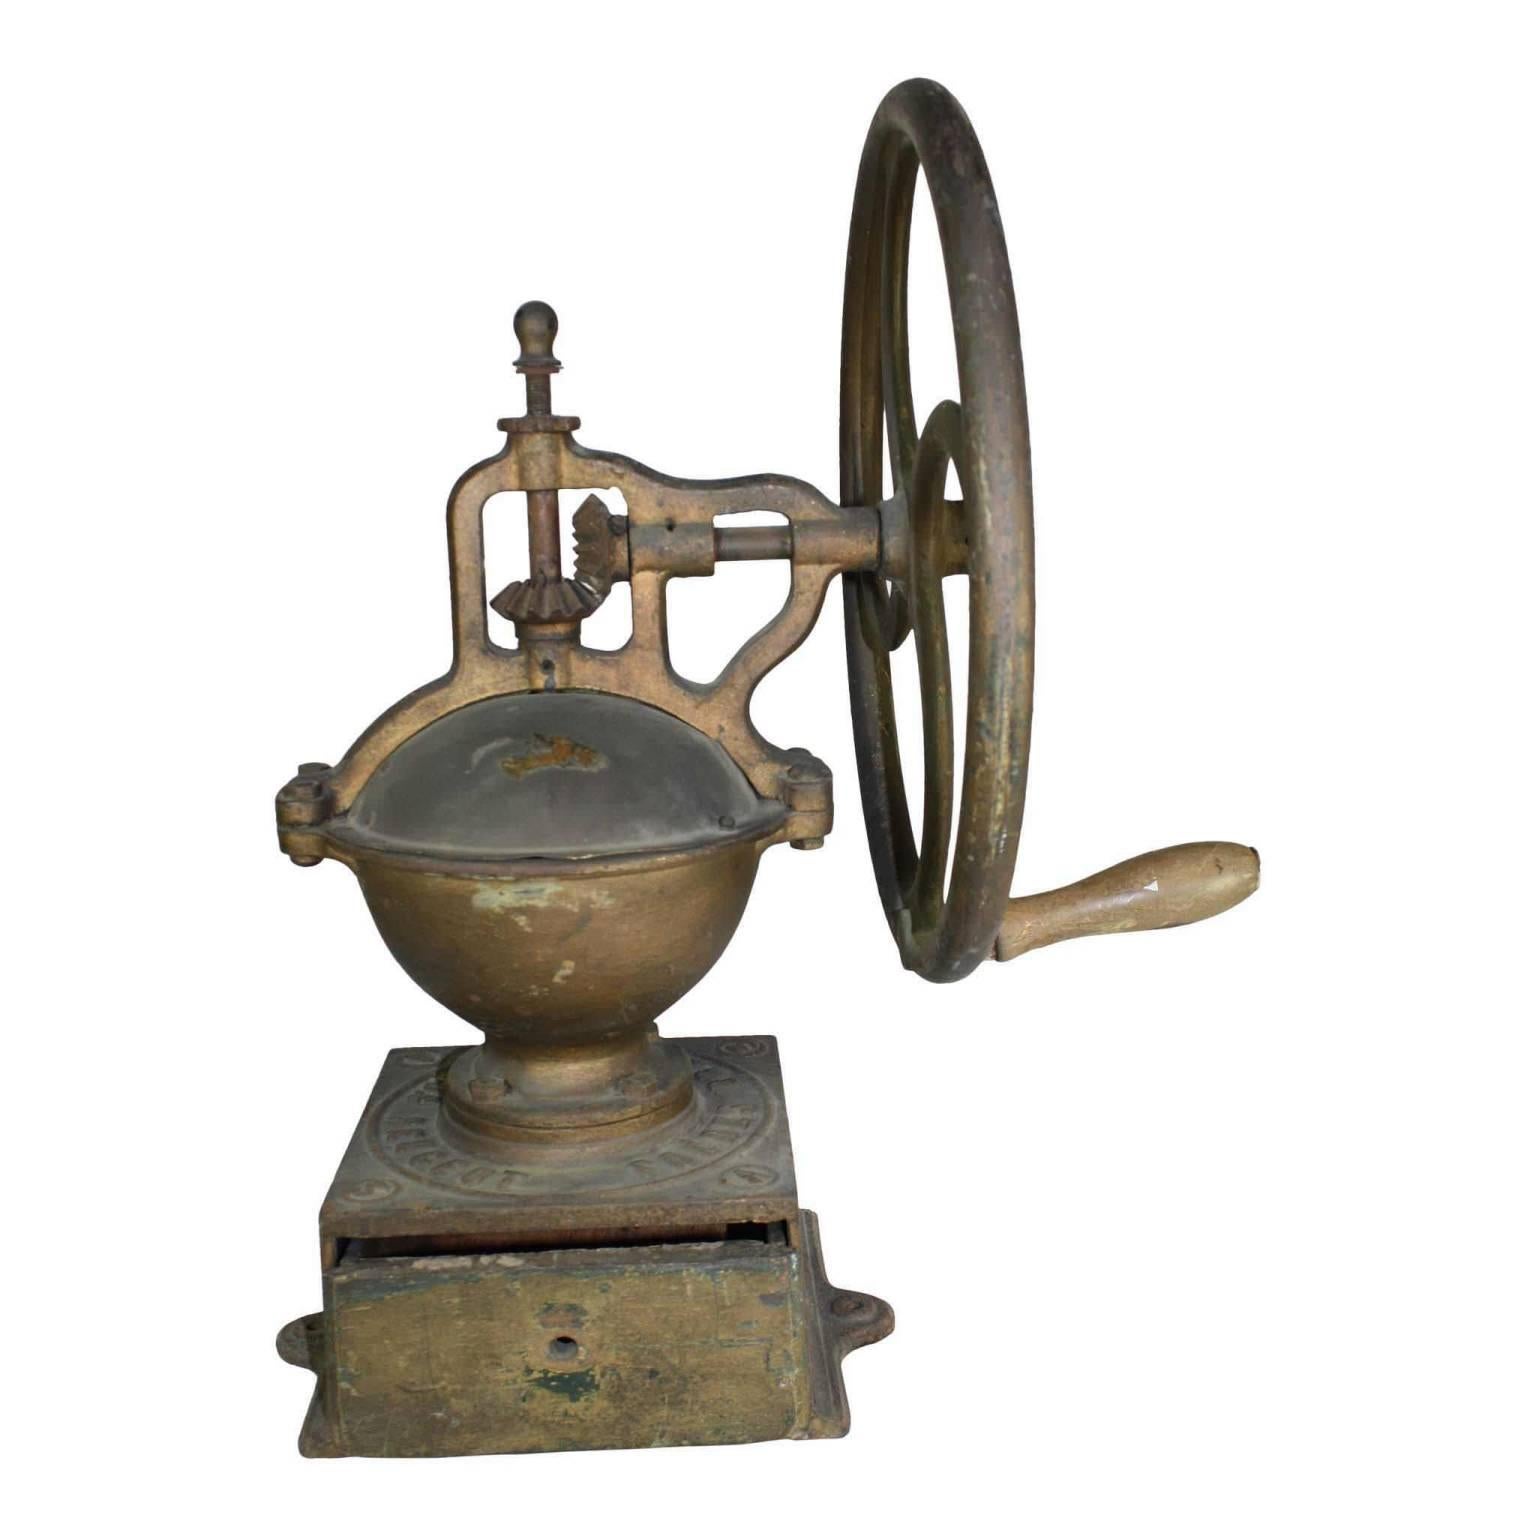 Un moulin à café industriel de la première heure du célèbre fabricant français, Peugeot Frères. L'une des plus grandes roues en fonte mesure 15 pouces et présente toutes les finitions d'origine (de nombreuses roues disponibles ont été repeintes).